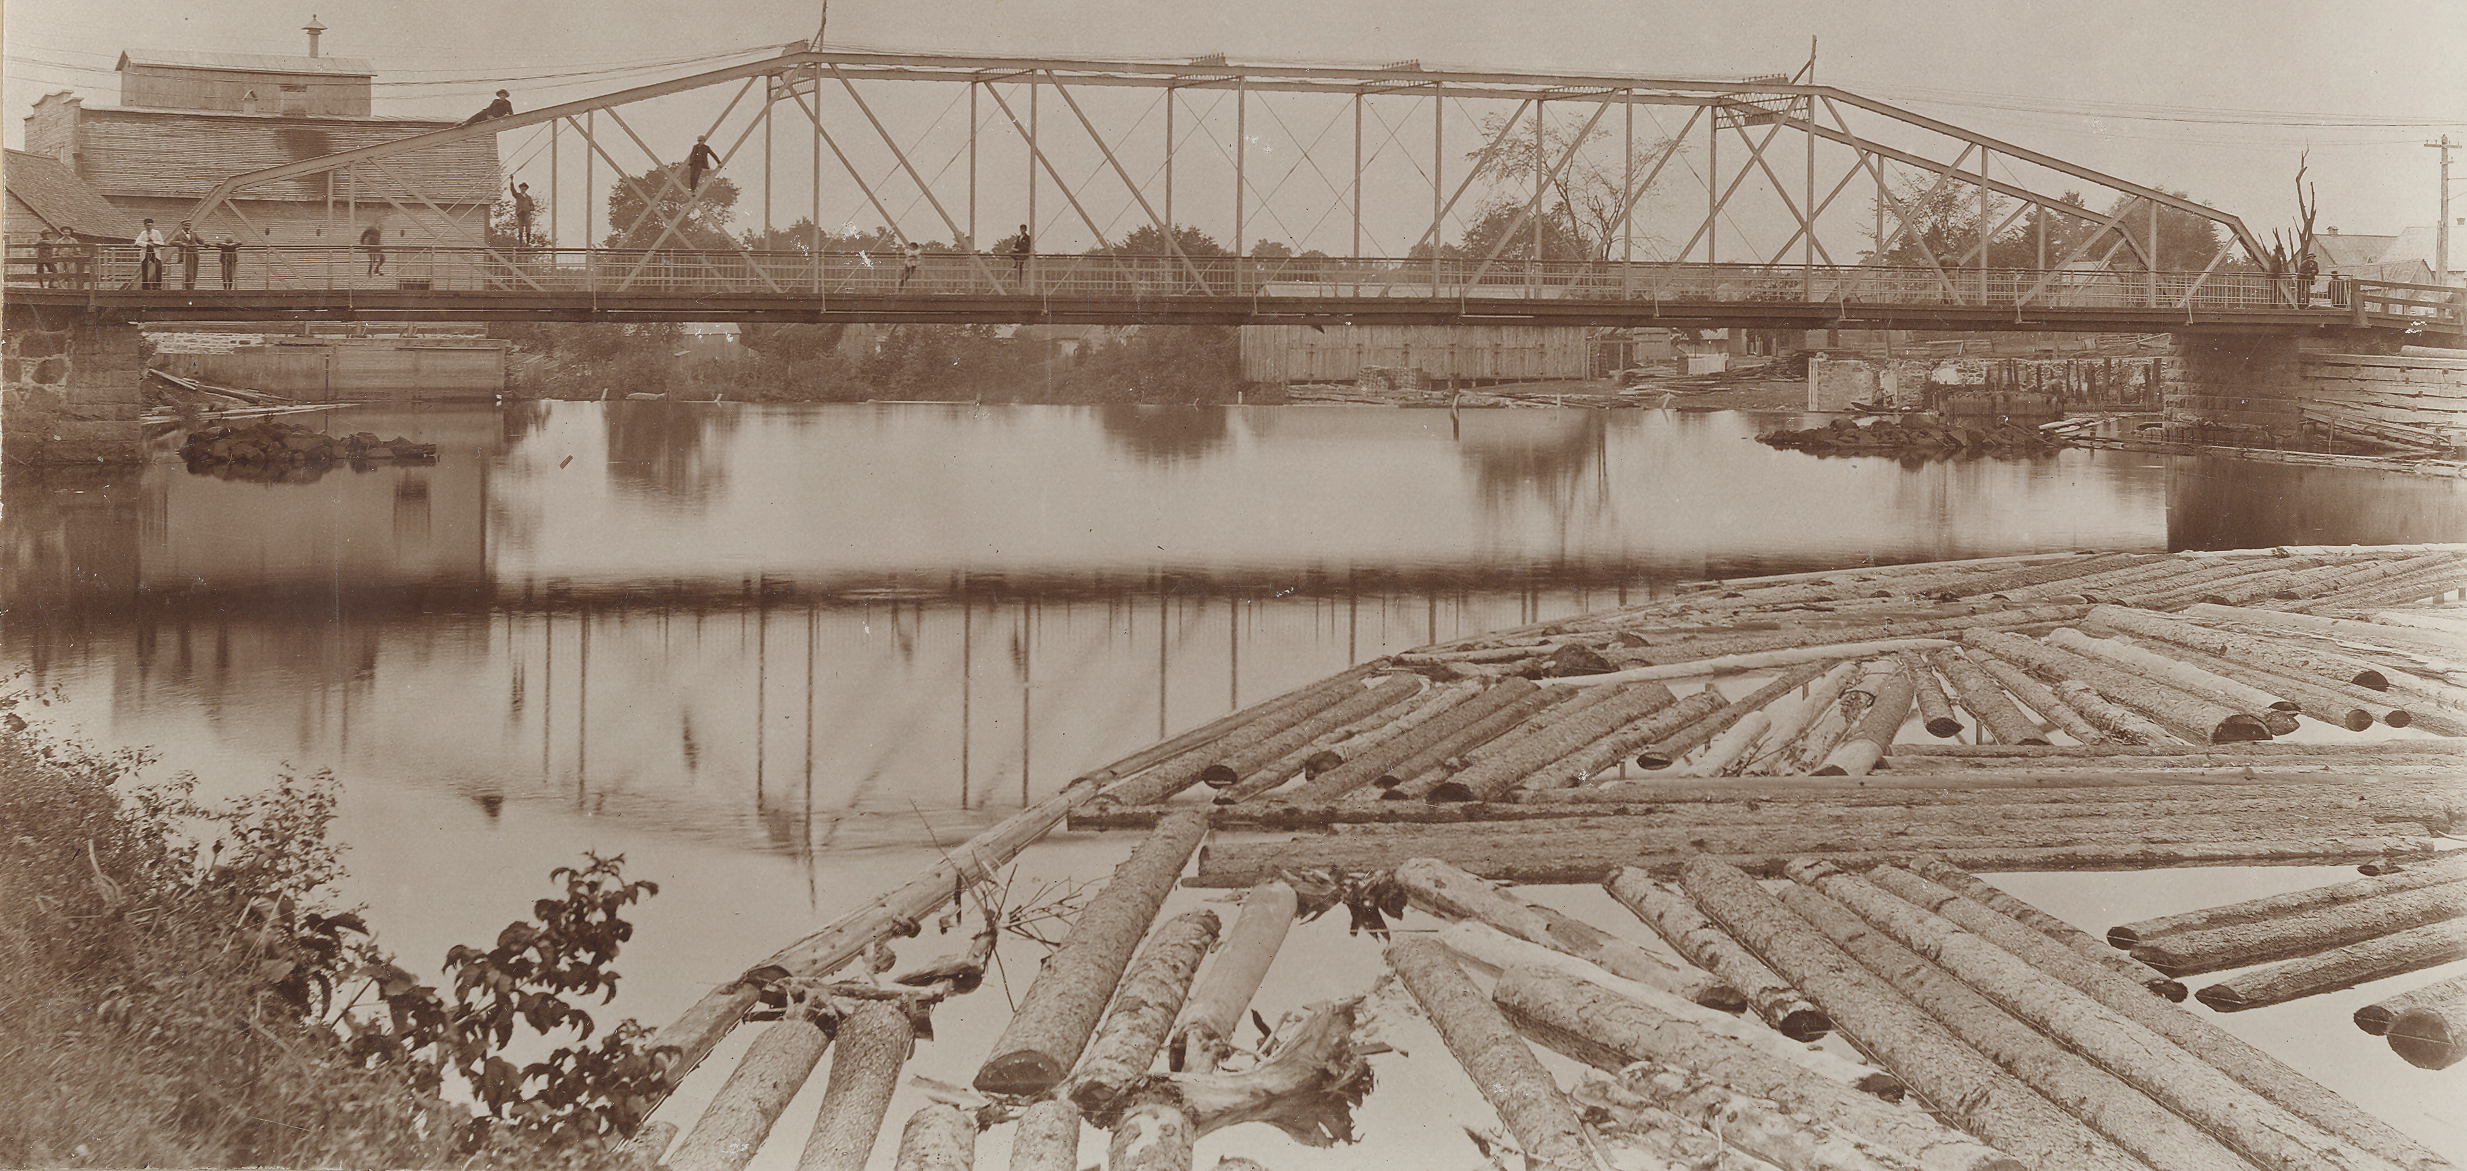 Photographie sépia d’un paysage en été dont le sujet principal est un pont de fer et une rivière. Quelques individus se tiennent sur le pont ou sont montés dans la structure. En premier plan, on aperçoit des troncs d’arbres qui flottent dans l’eau. Quelques bâtiments de bois sont en arrière-plan.